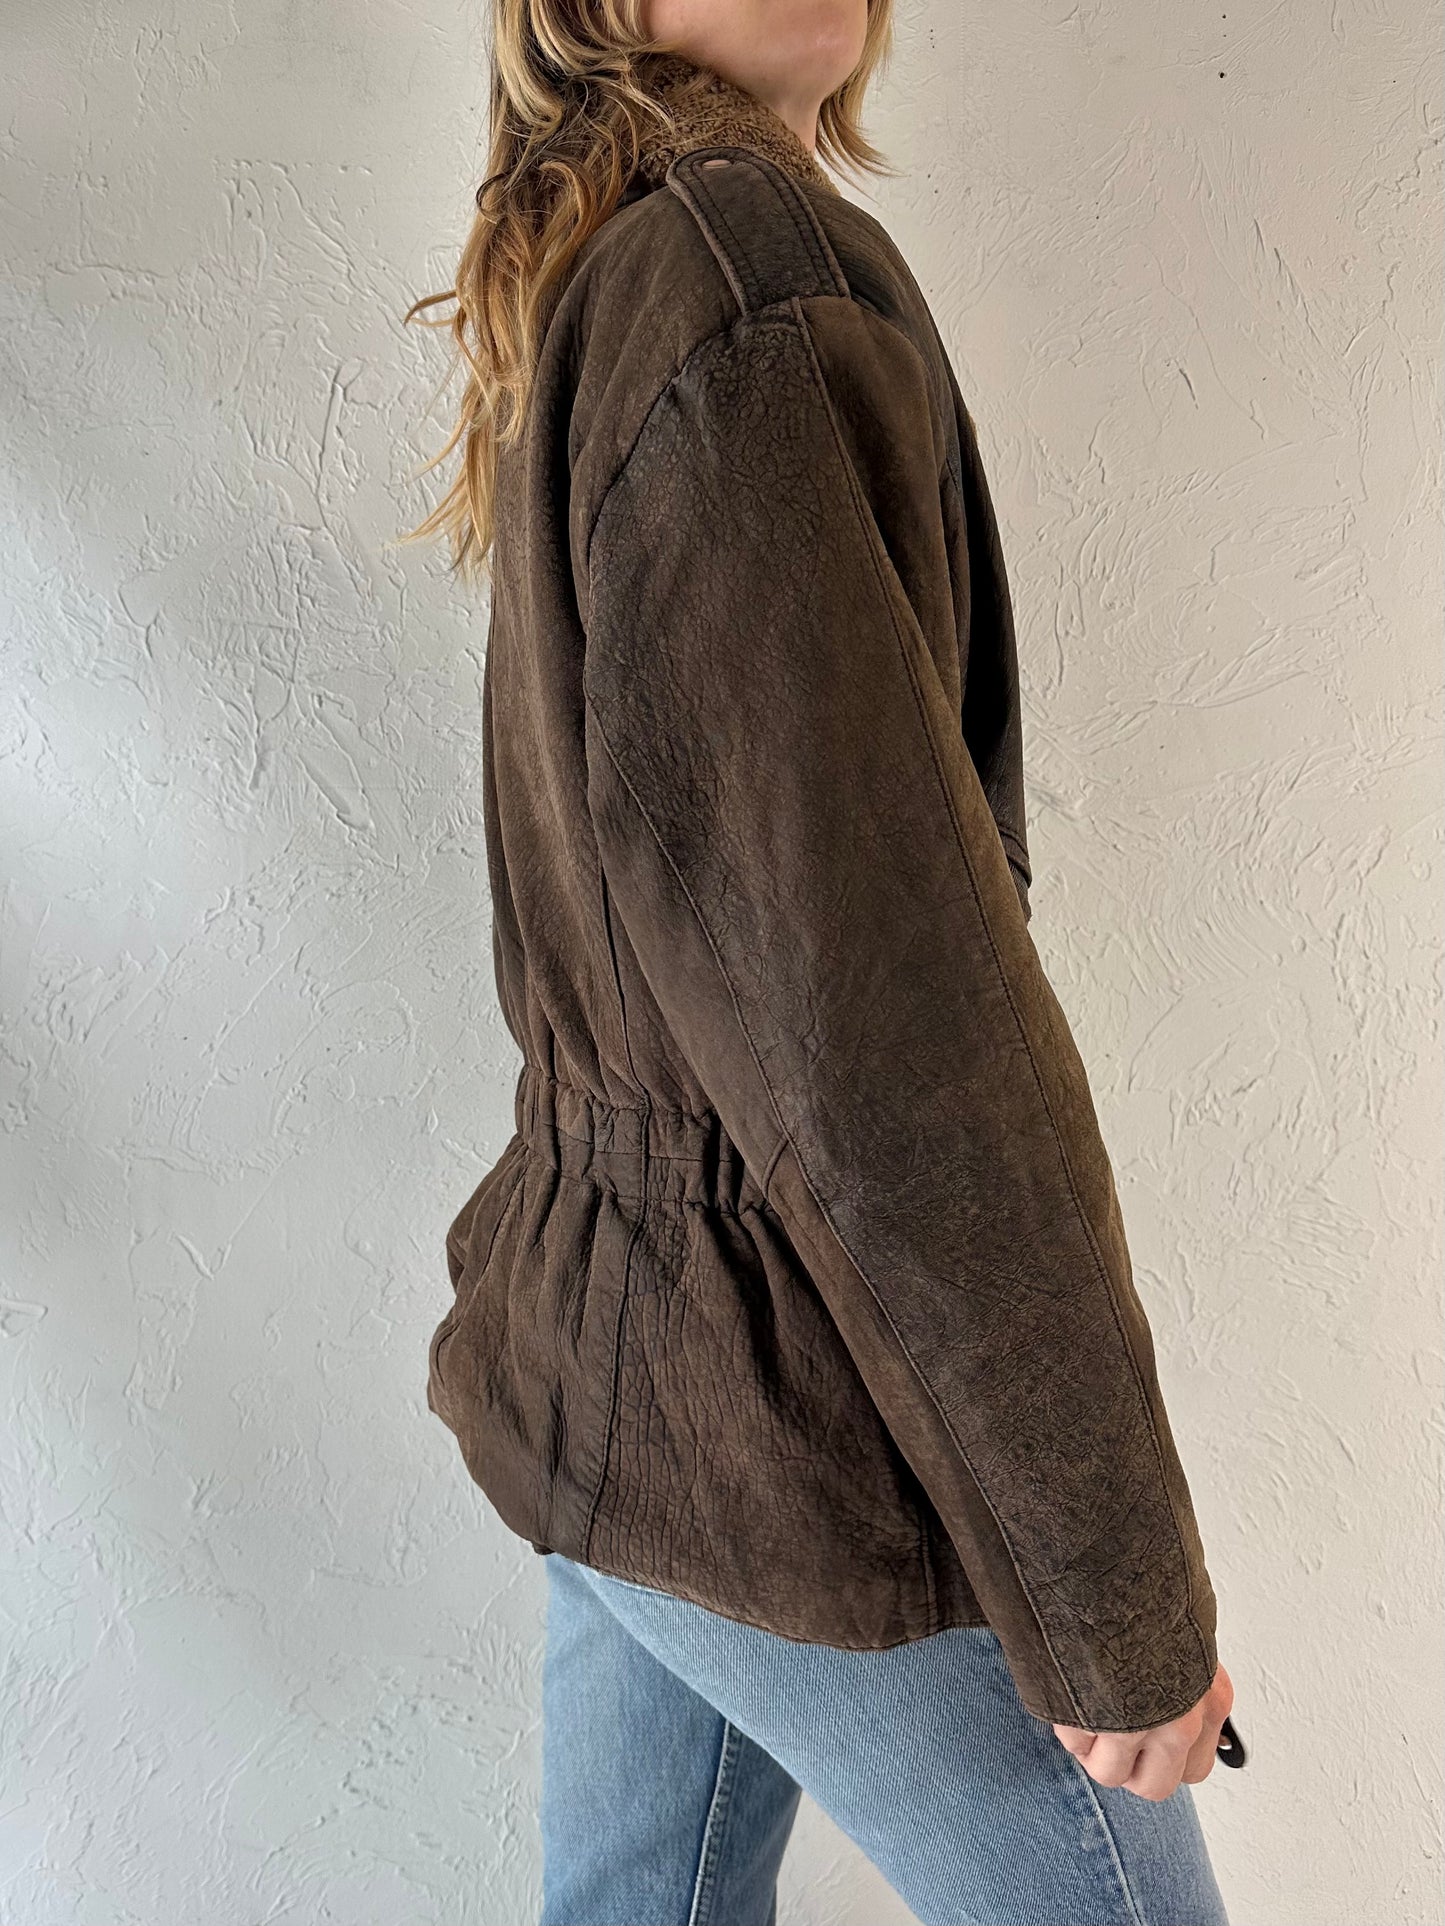 Vintage Brown Suede Leather Jacket / Medium